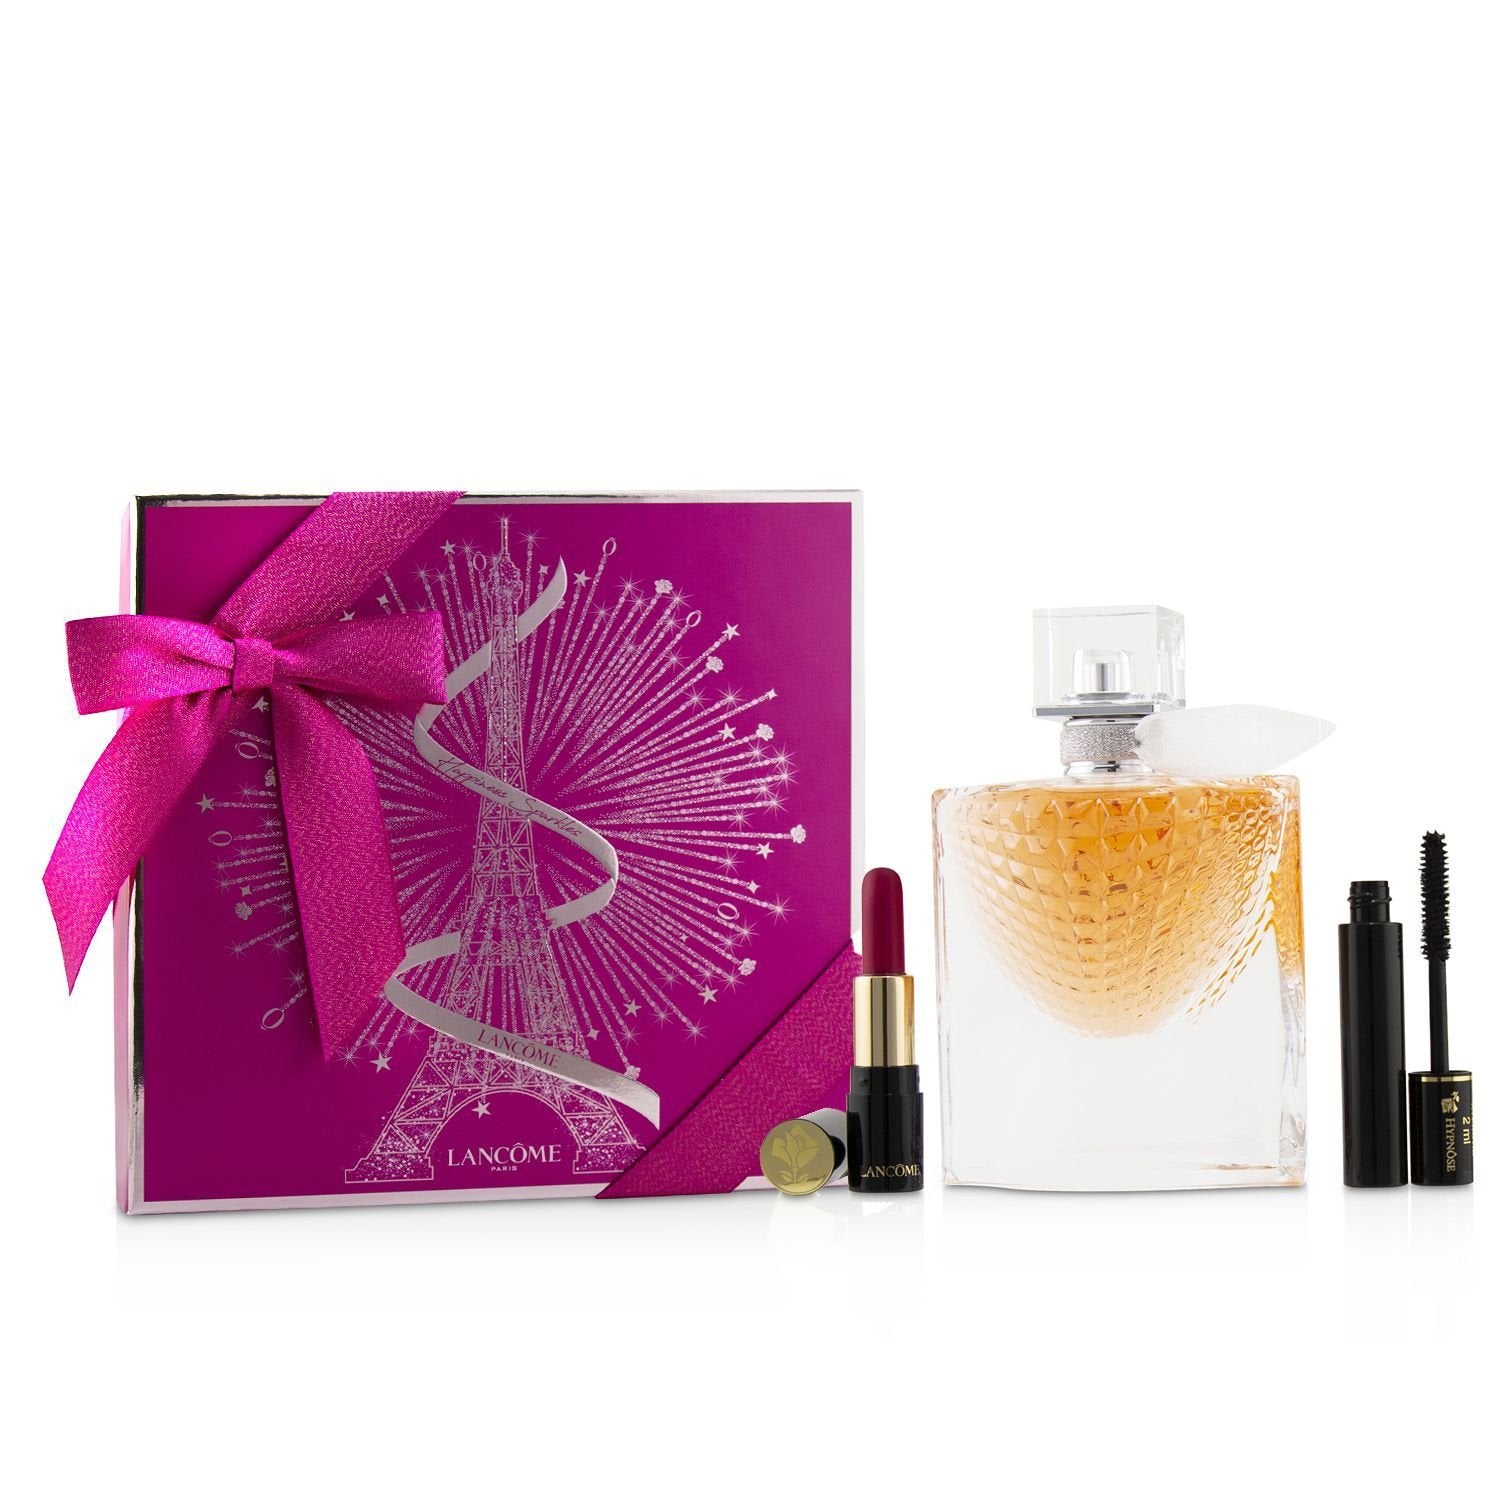 Lancôme La Vie Est Belle 3 Piece Gift Set Eau De Parfum 50ml - Lipstick 378 1.6g - Mascara 2ml